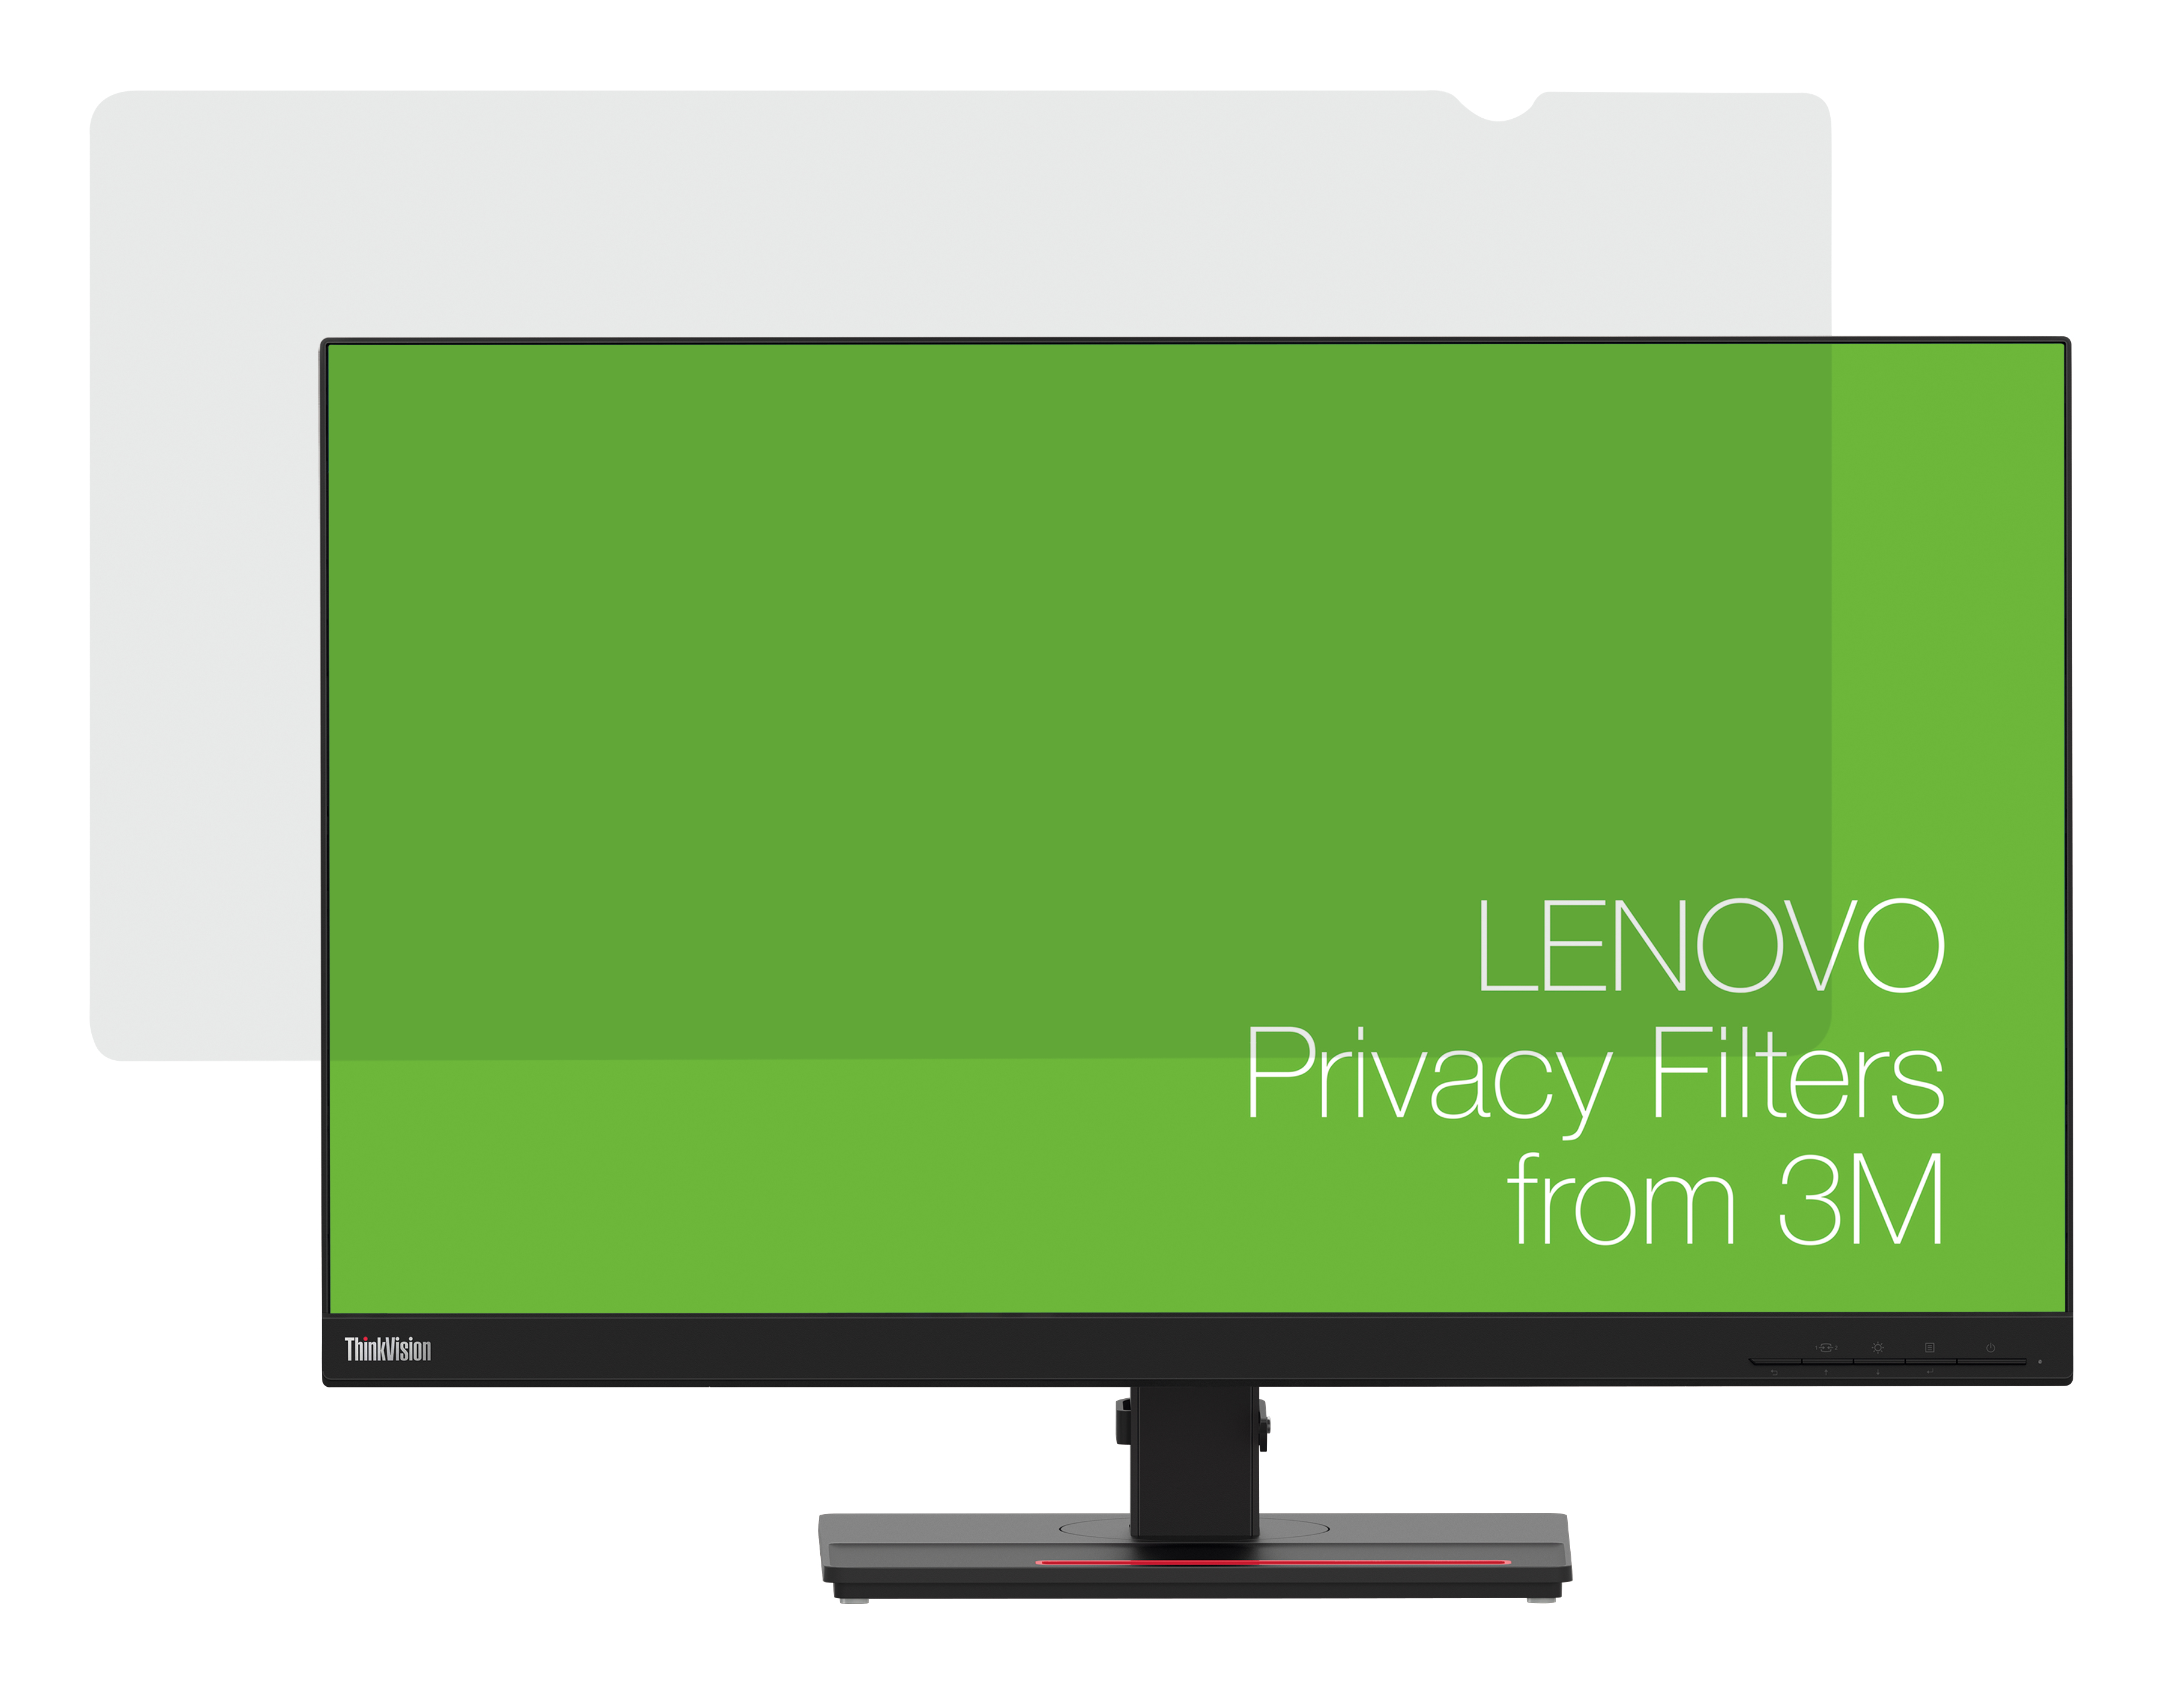 Lenovo 3M W9 - Blickschutzfilter für Bildschirme - 68,6 cm Breitbild (27 Zoll Breitbild)